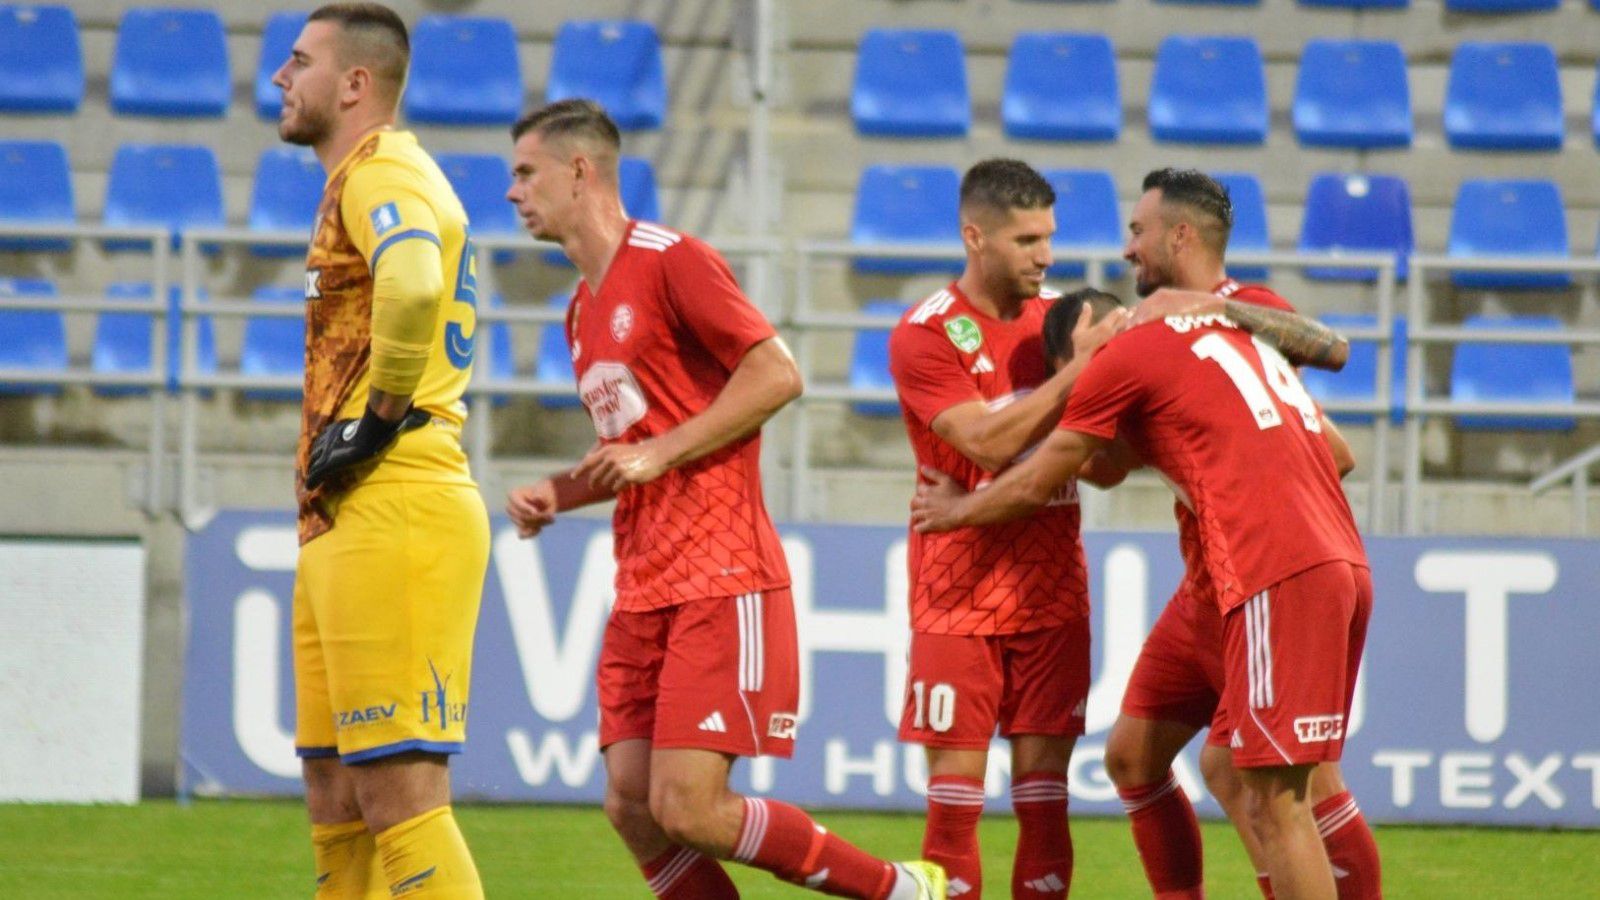 A Kisvárda győzelemmel kezdte a bajnokságot, júliusban 2–0-ra győzött a Zalaegerszeg otthonában. (Fotó: kisvardafc.hu)